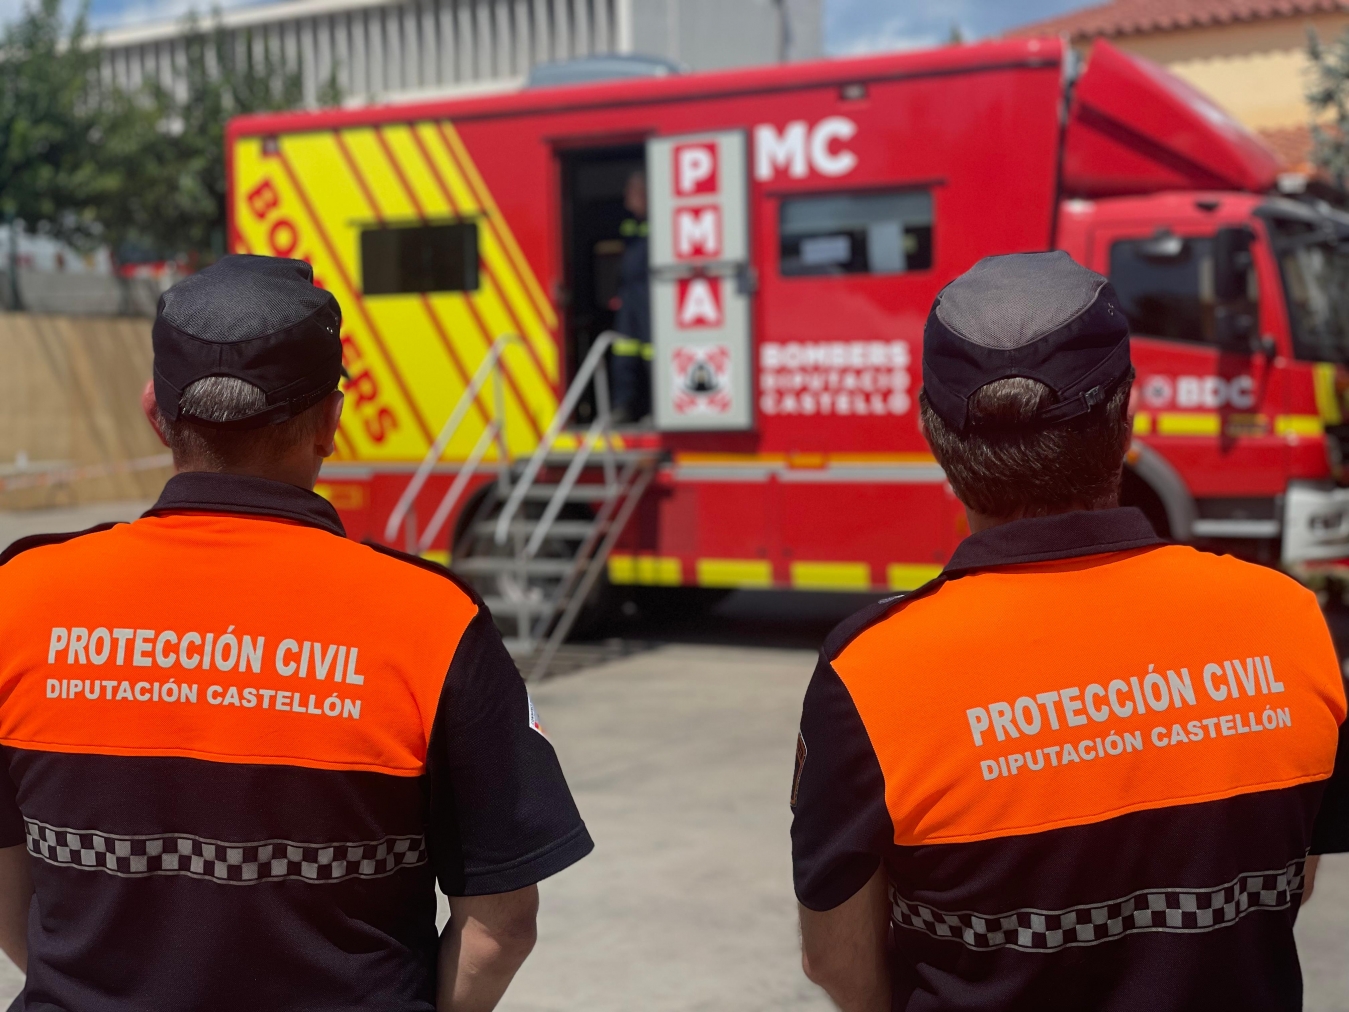 La Agrupación de Protección Civil de la Diputación de Castellón amplía la plantilla de voluntarios para realizar el apoyo a emergencias